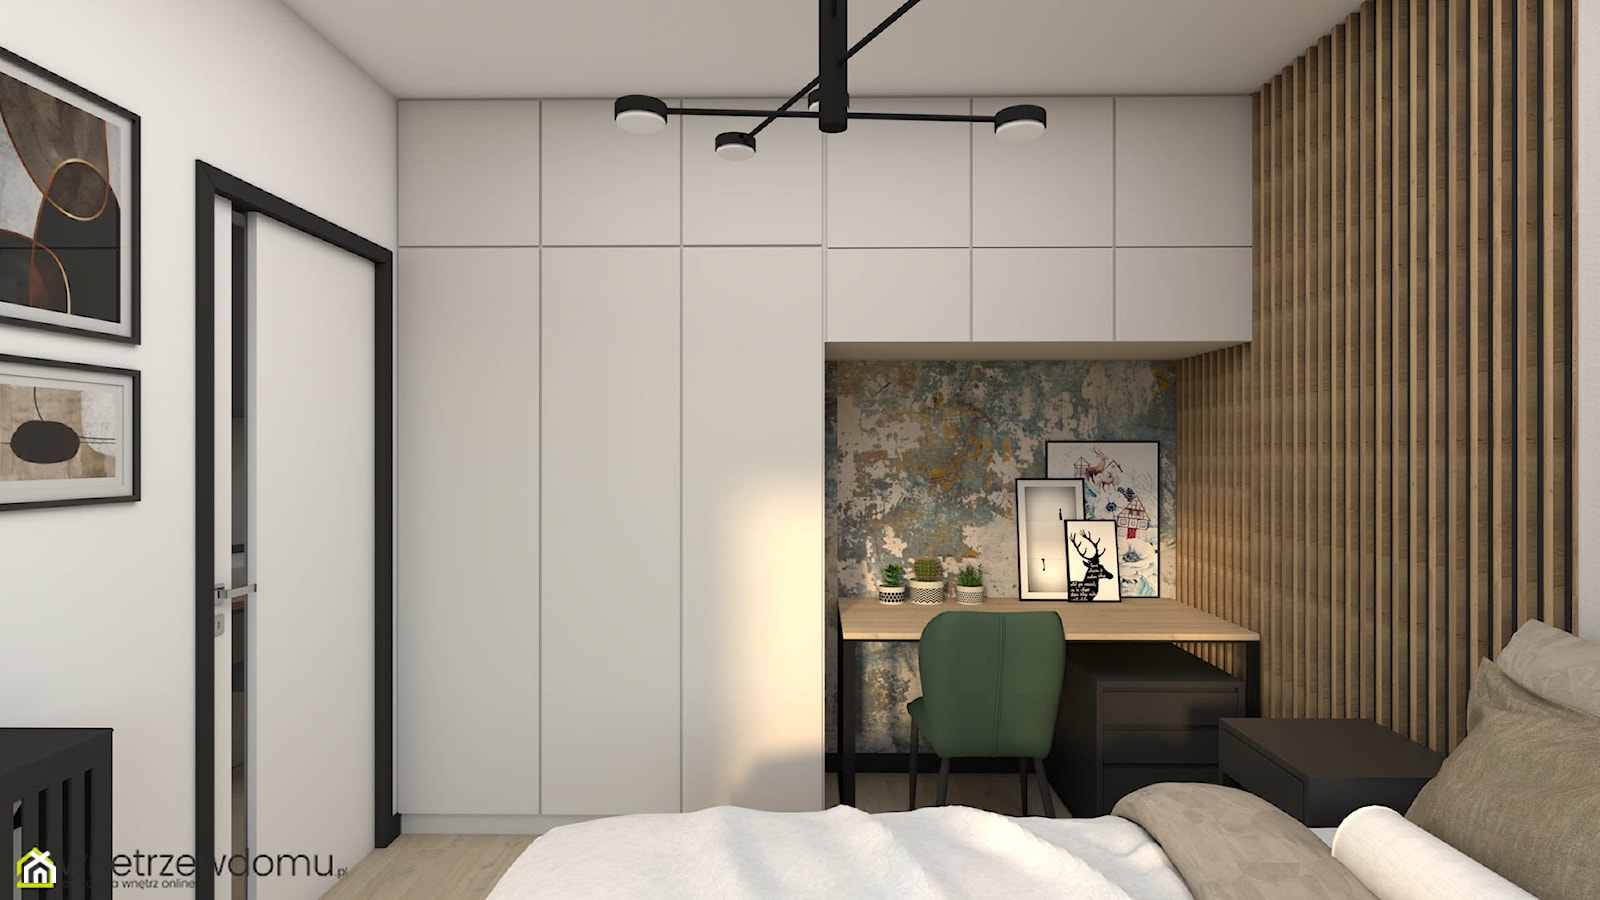 Połączenie lameli i paneli tapicerowanych w nowoczesnej sypialni - zdjęcie od wnetrzewdomu - Homebook